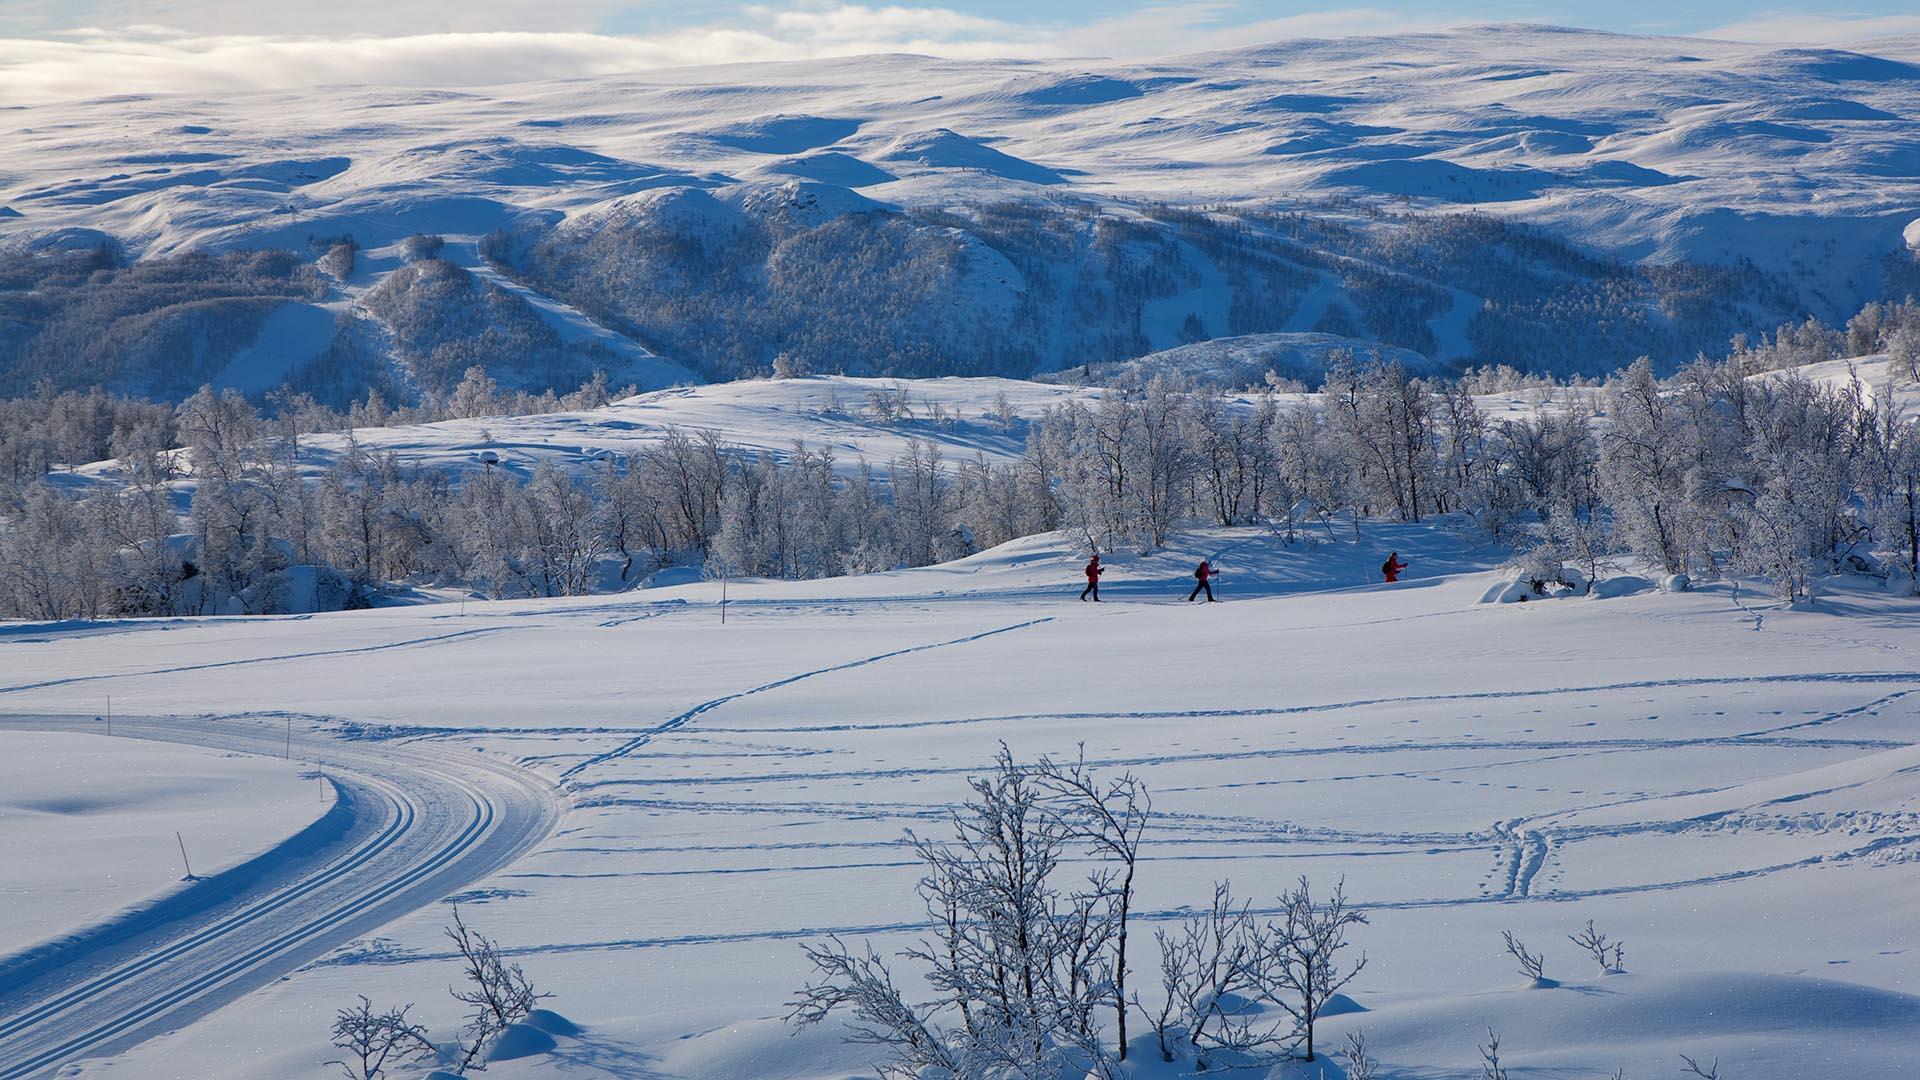 Hügelige, verschneite Gebirgslandschaft mit einer frisch gespurten Loipe und Skilangläufern.